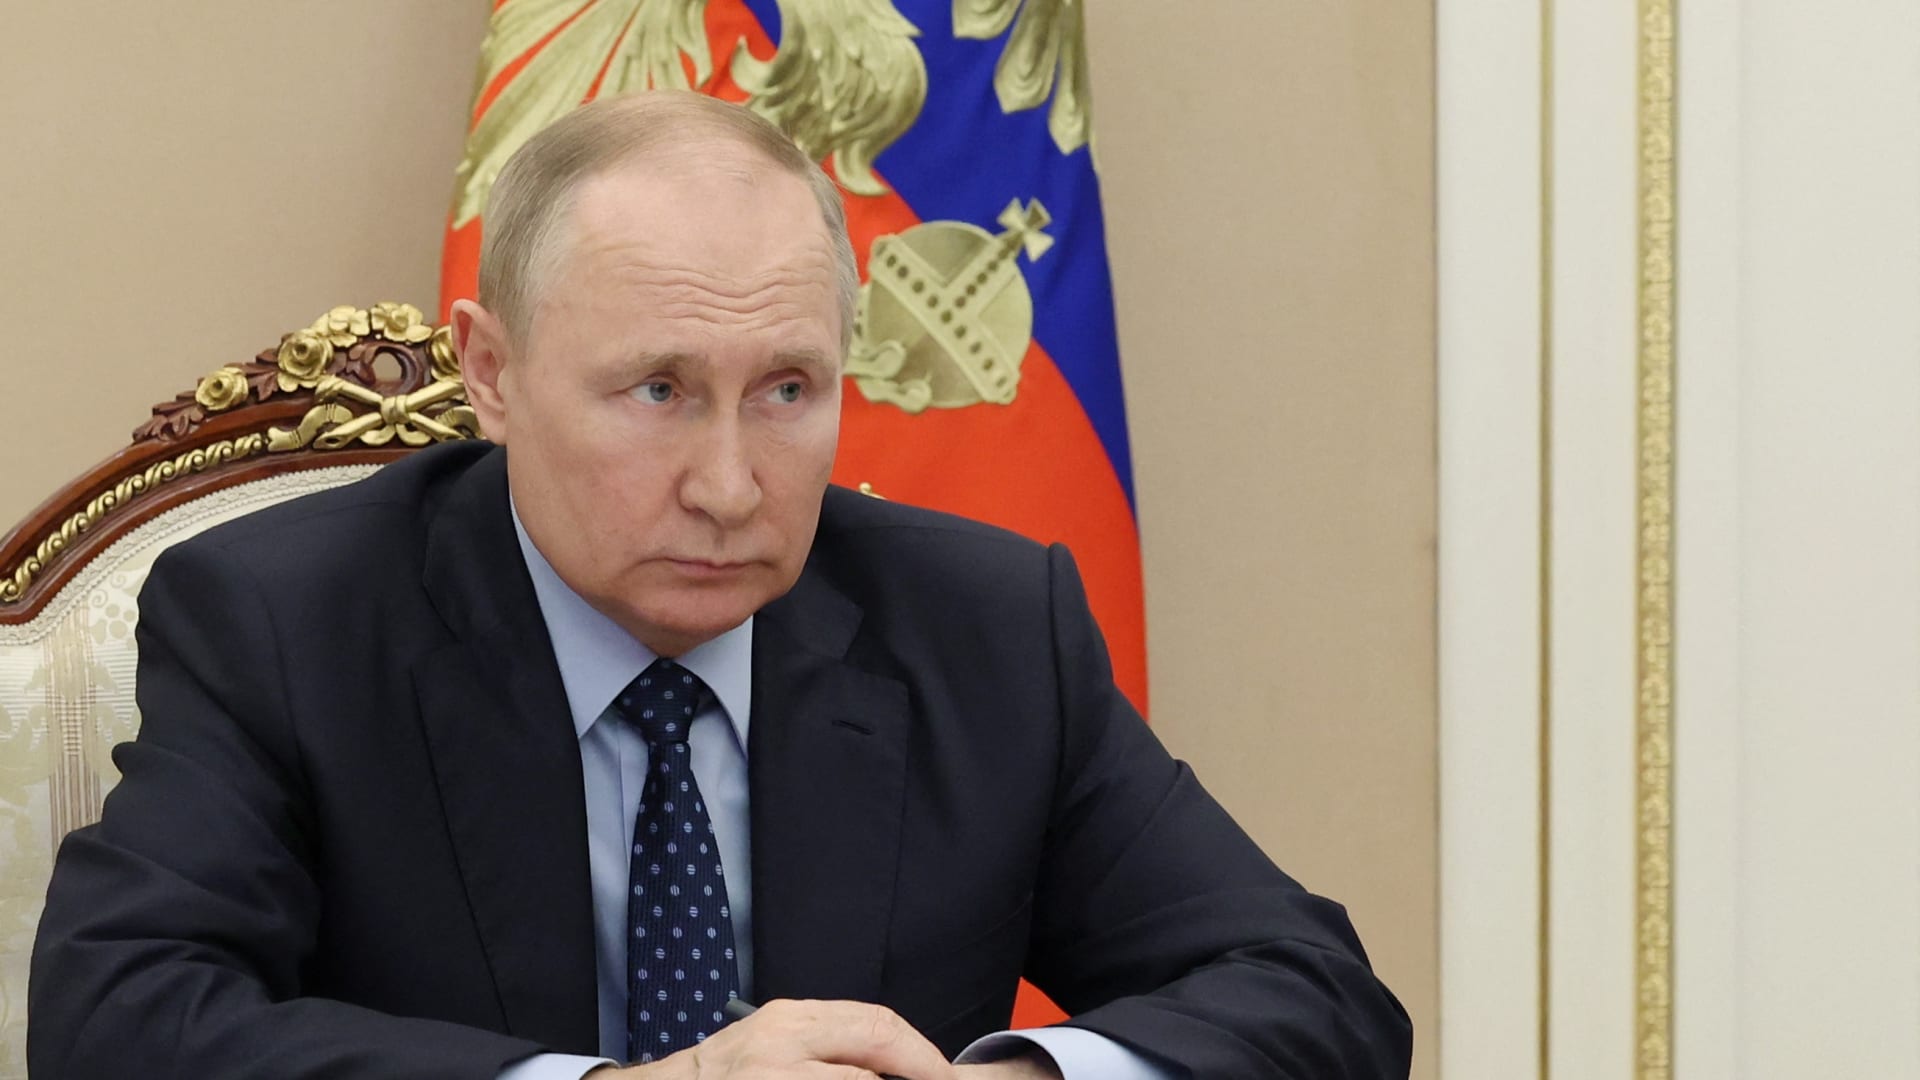 بوتين يحث شركات الطاقة الروسية على الاستعداد لعقوبات أوروبية